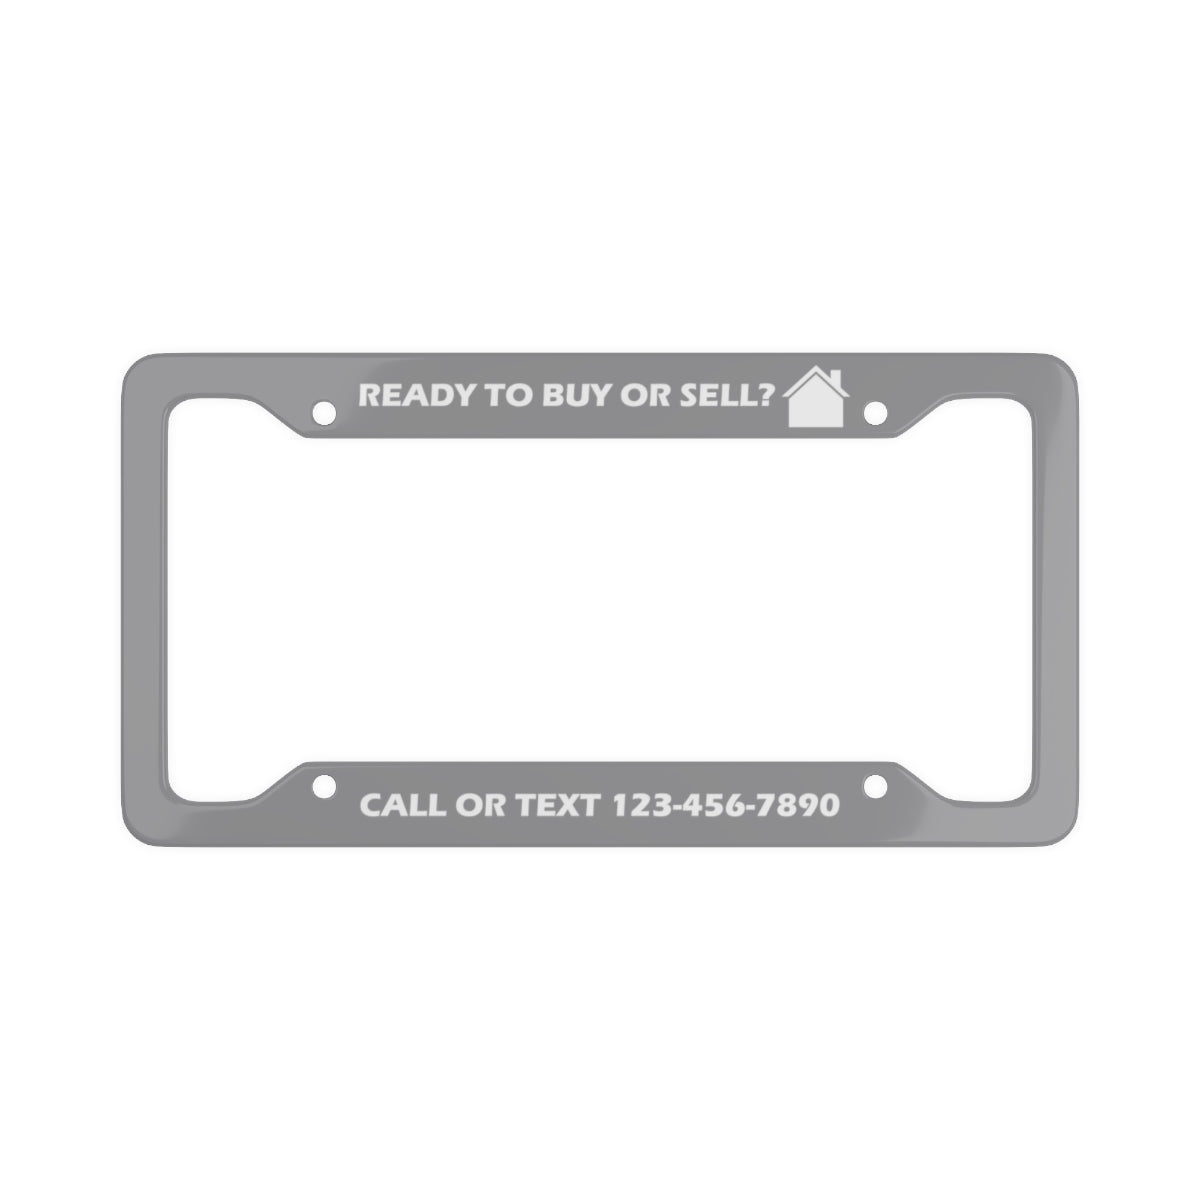 Custom License Plate Frame - Buy/Sell - Grey